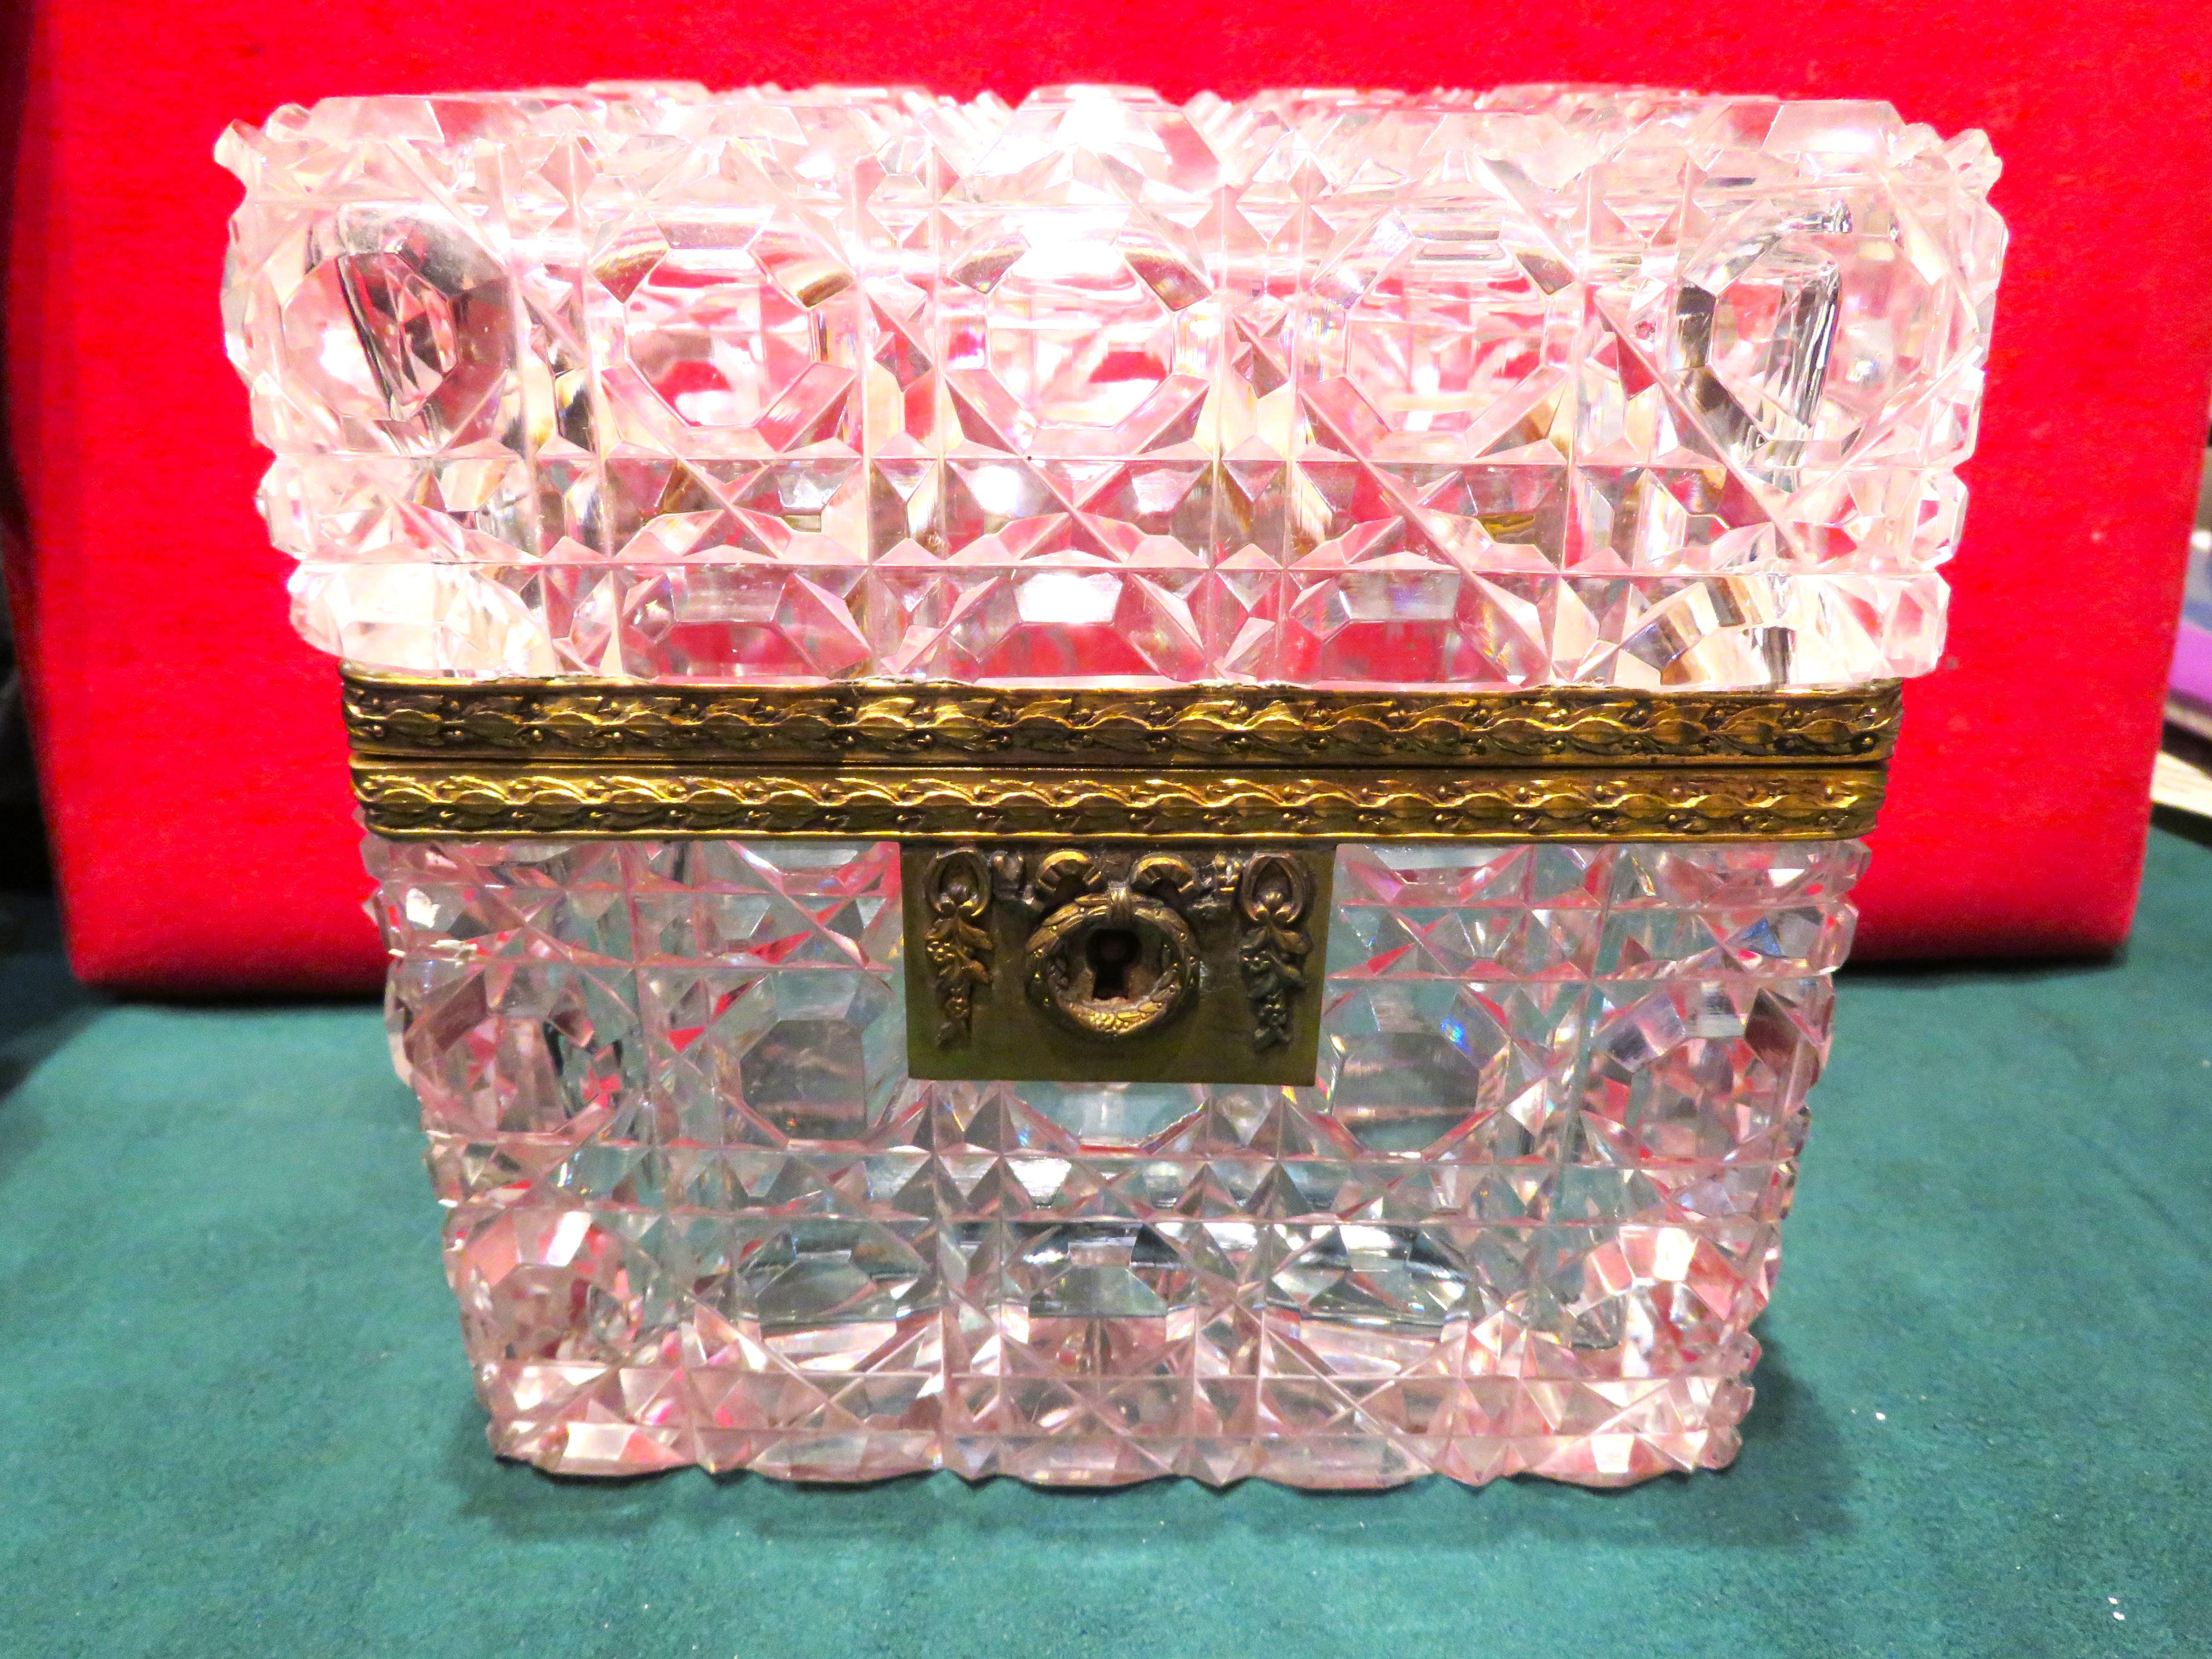 Eine seltene schöne 19. Jahrhundert Bacarrat Stil antike Hand geschliffen Scharnier Französisch Crystal Box vergoldete Bronze montiert geschliffenen Kristall-Box. Der rechteckige aufklappbare Deckel und die Seiten zentrieren tief eingeschnittene